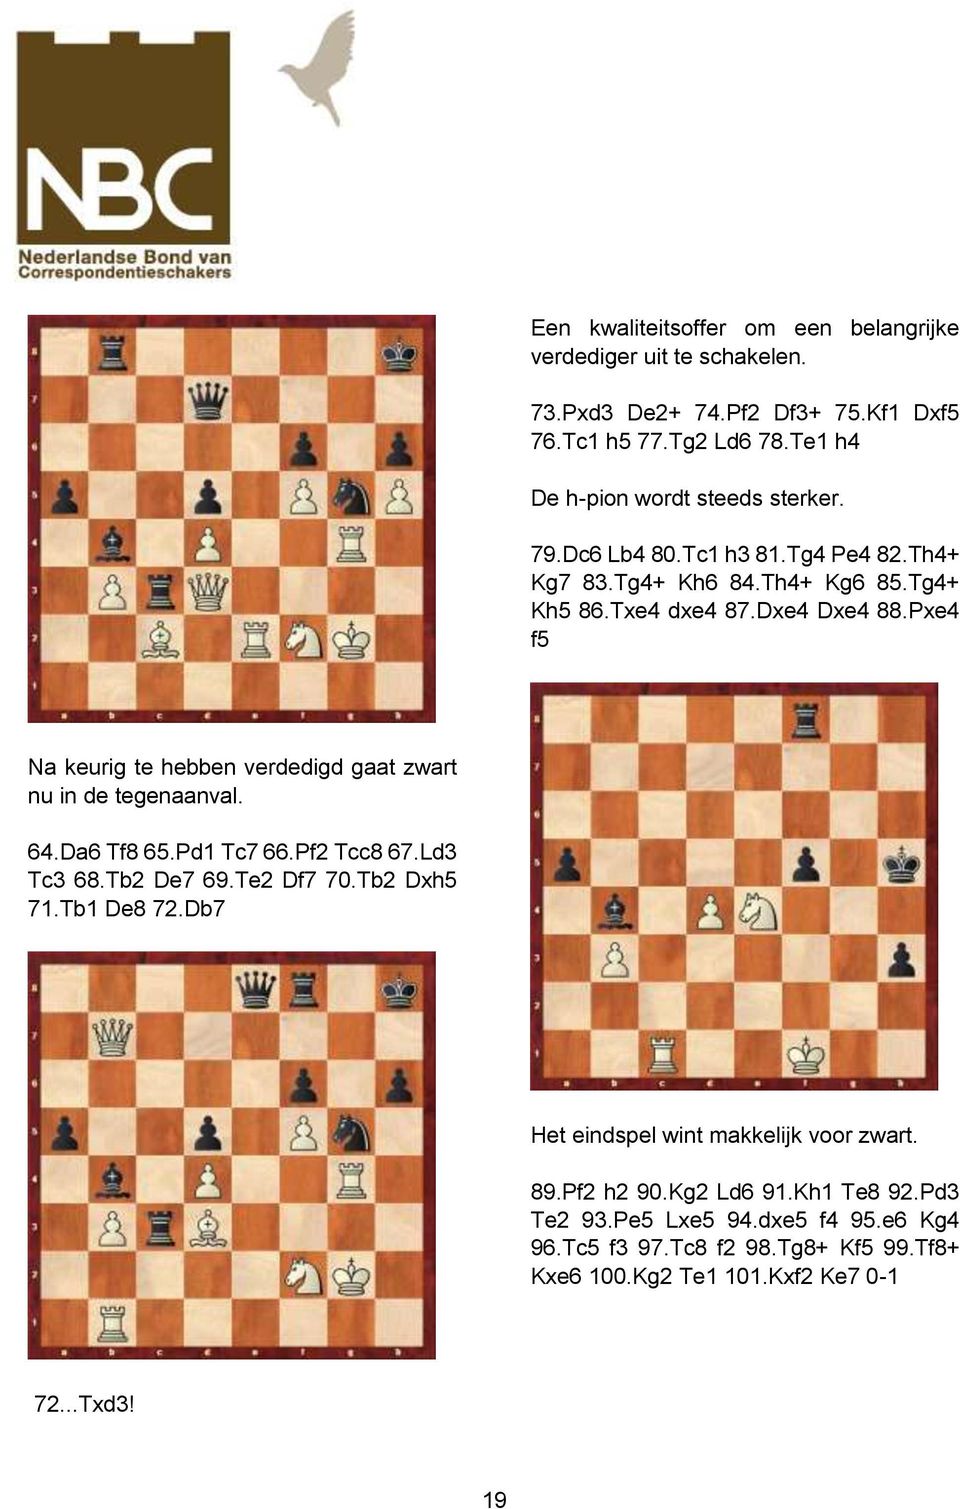 Pxe4 f5 Na keurig te hebben verdedigd gaat zwart nu in de tegenaanval. 64.Da6 Tf8 65.Pd1 Tc7 66.Pf2 Tcc8 67.Ld3 Tc3 68.Tb2 De7 69.Te2 Df7 70.Tb2 Dxh5 71.